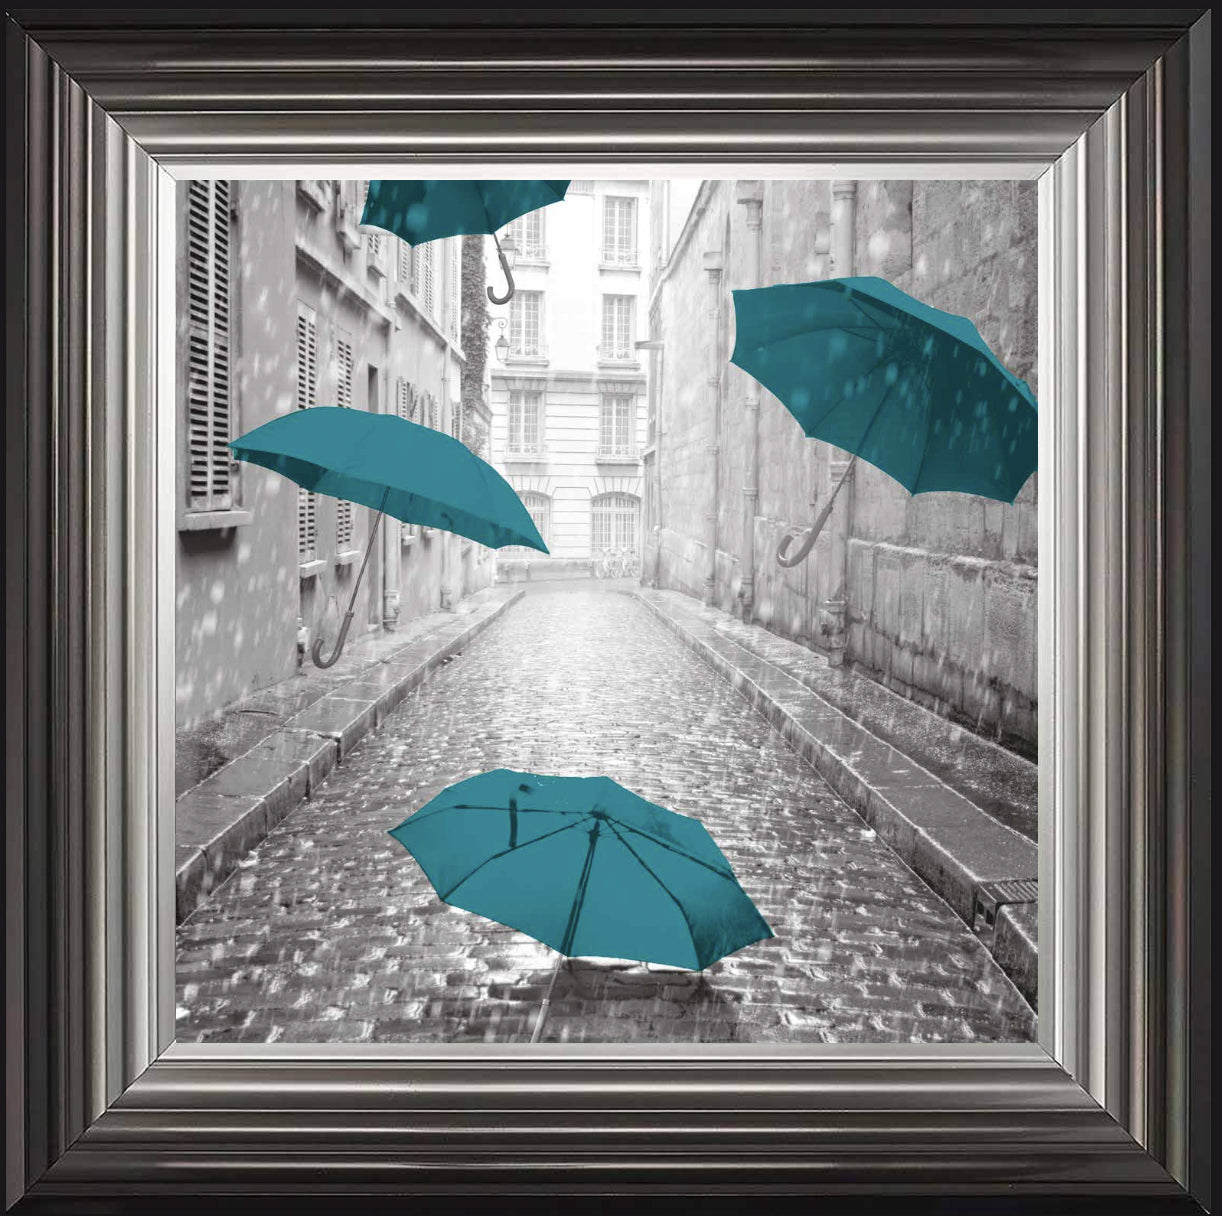 Teal Umbrellas, City Street in Paris